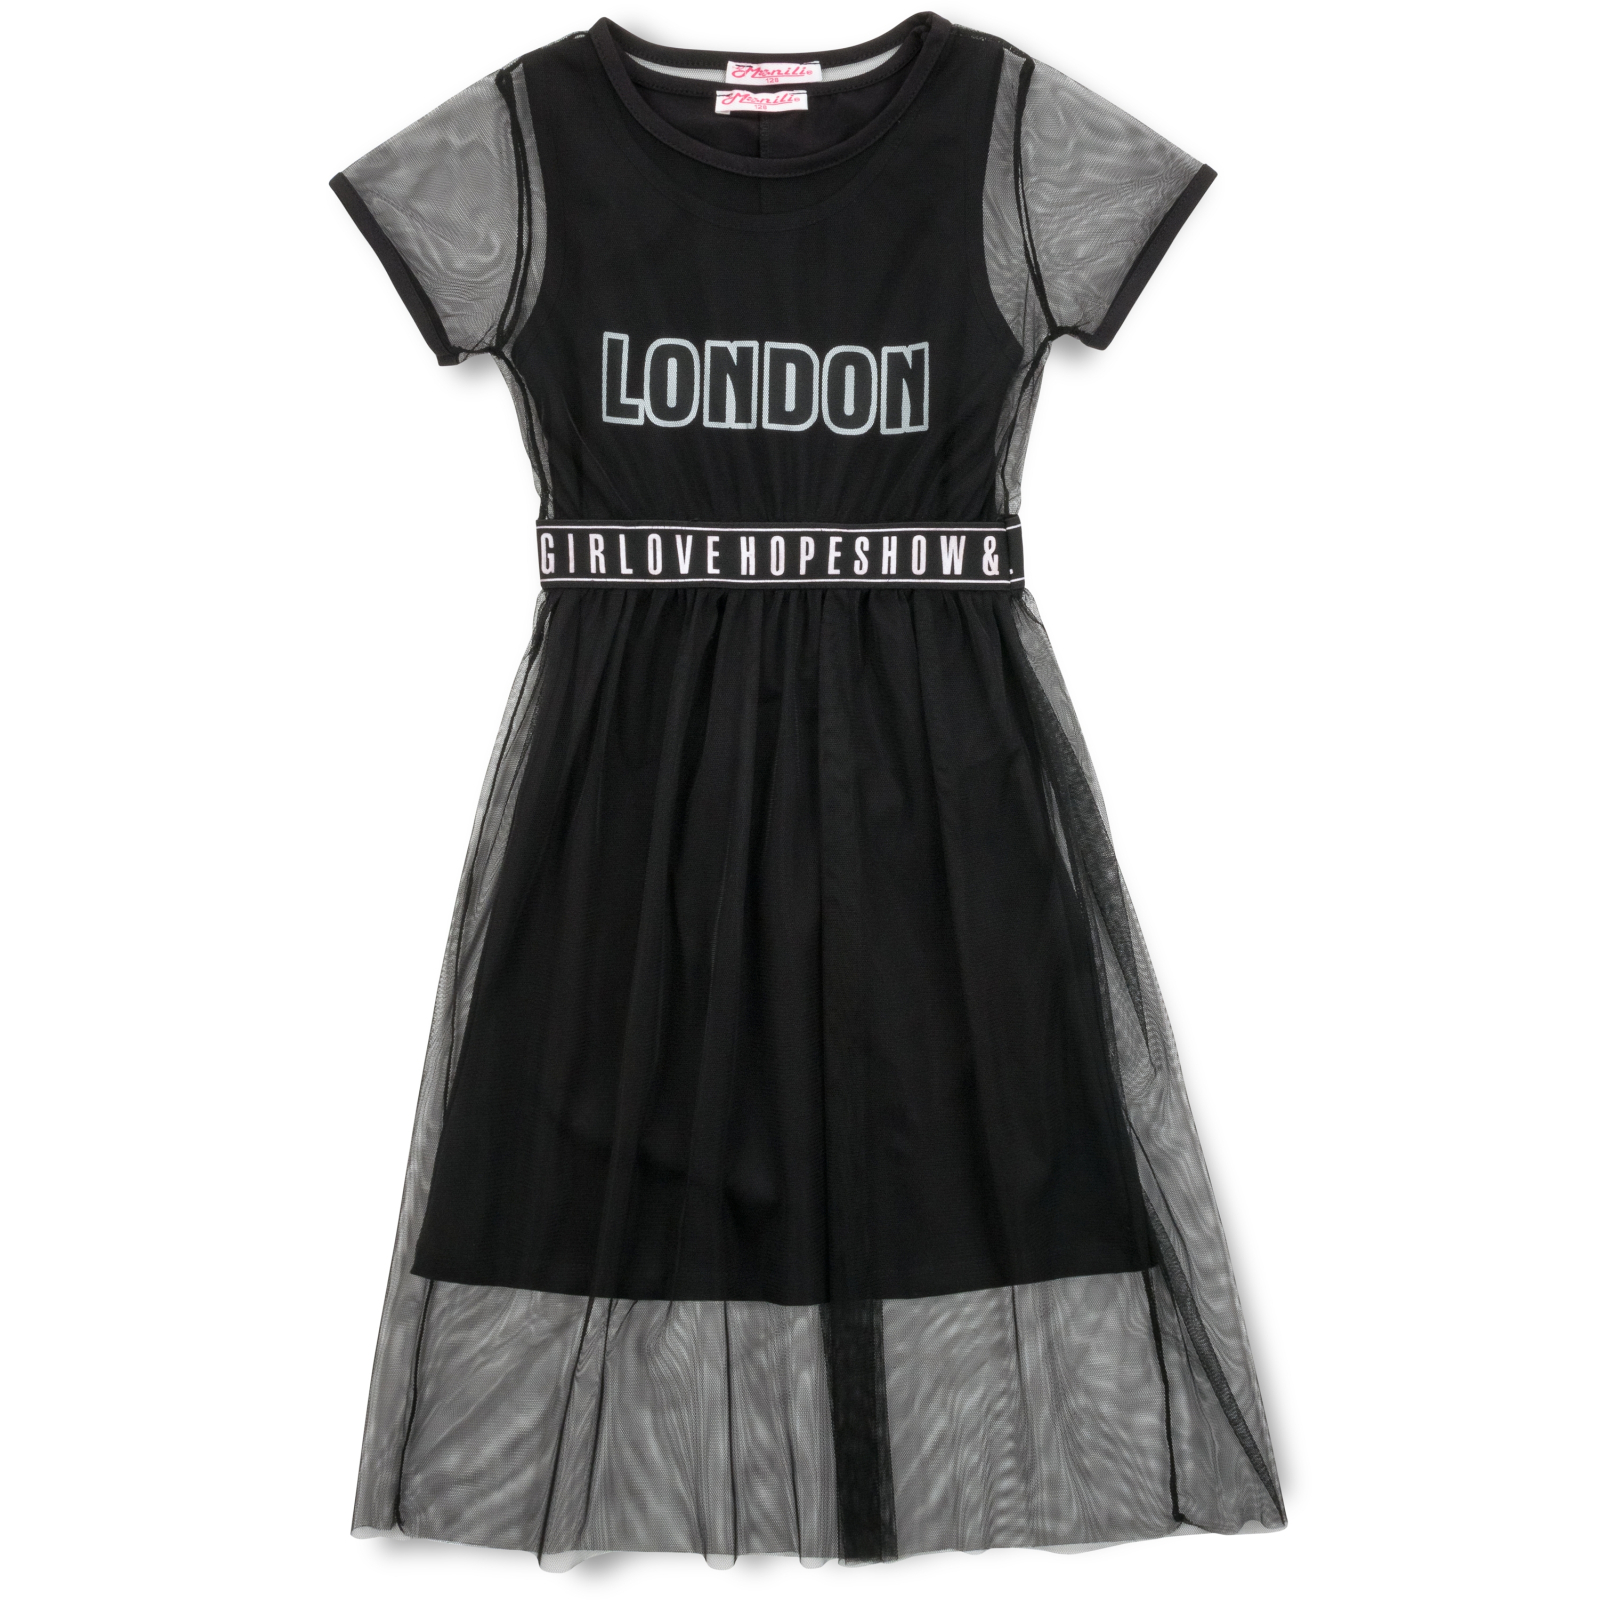 Платье Monili с сеткой (9016-152G-black)